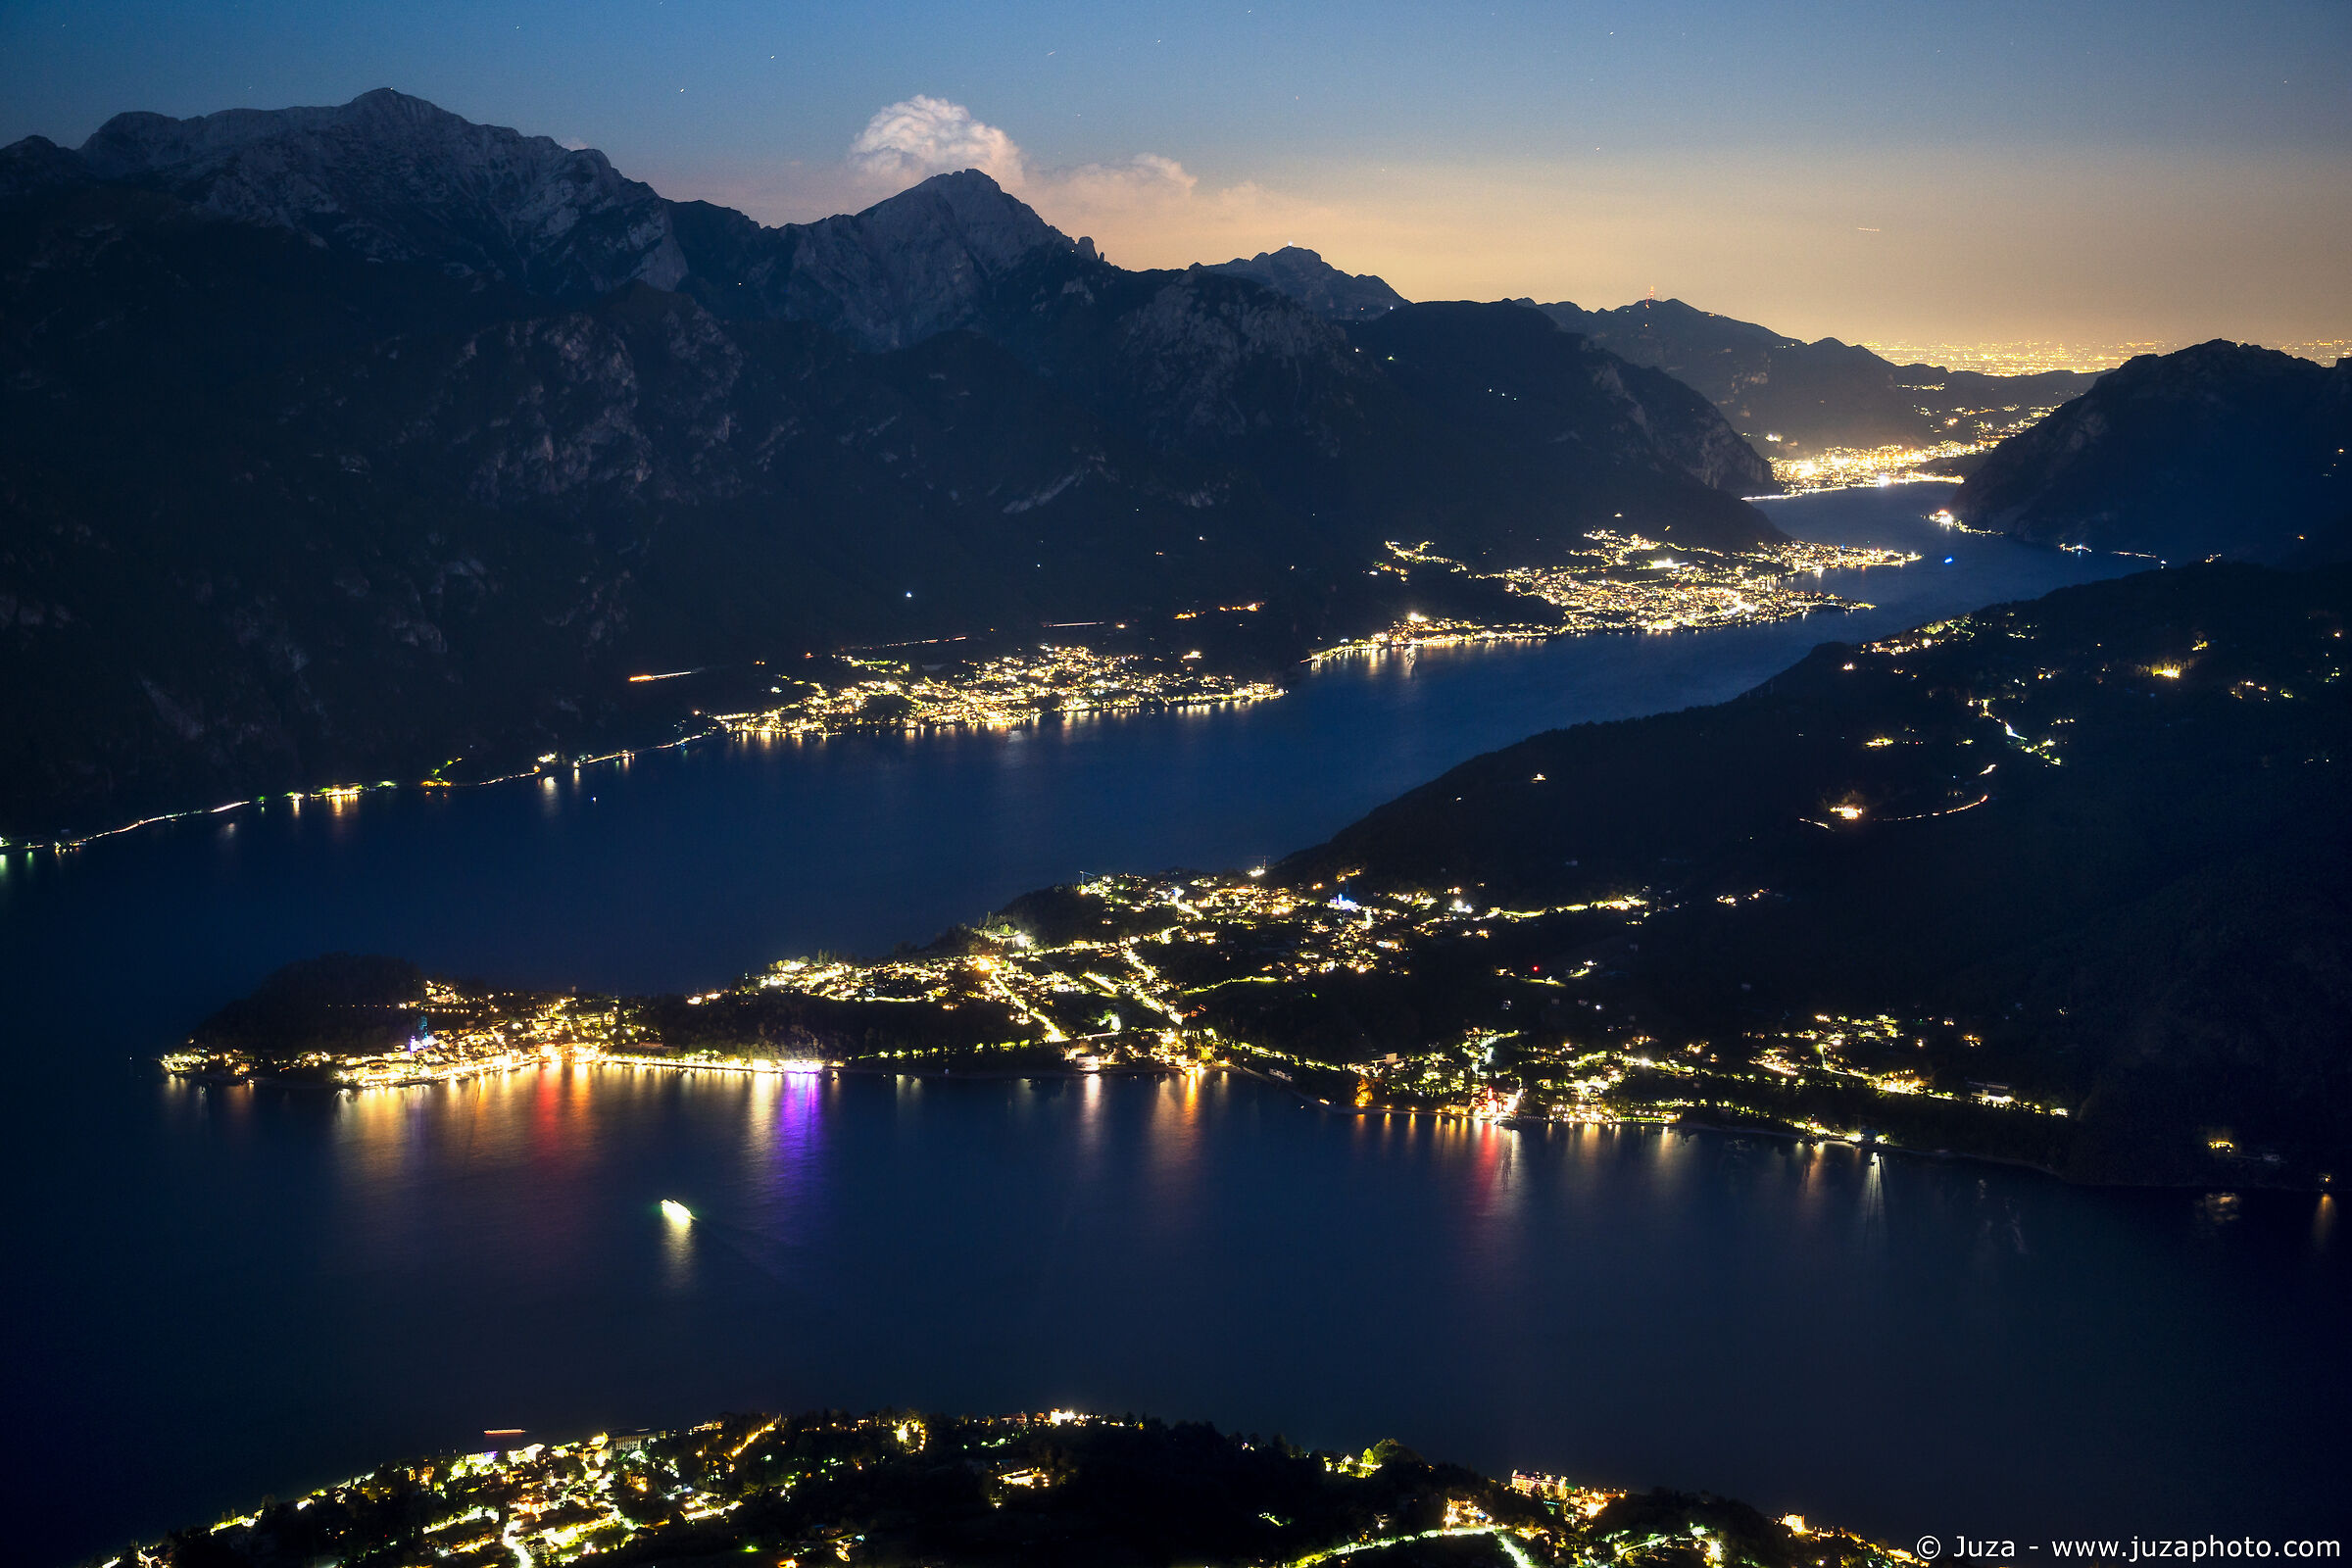 La notte sul Lago di Como...